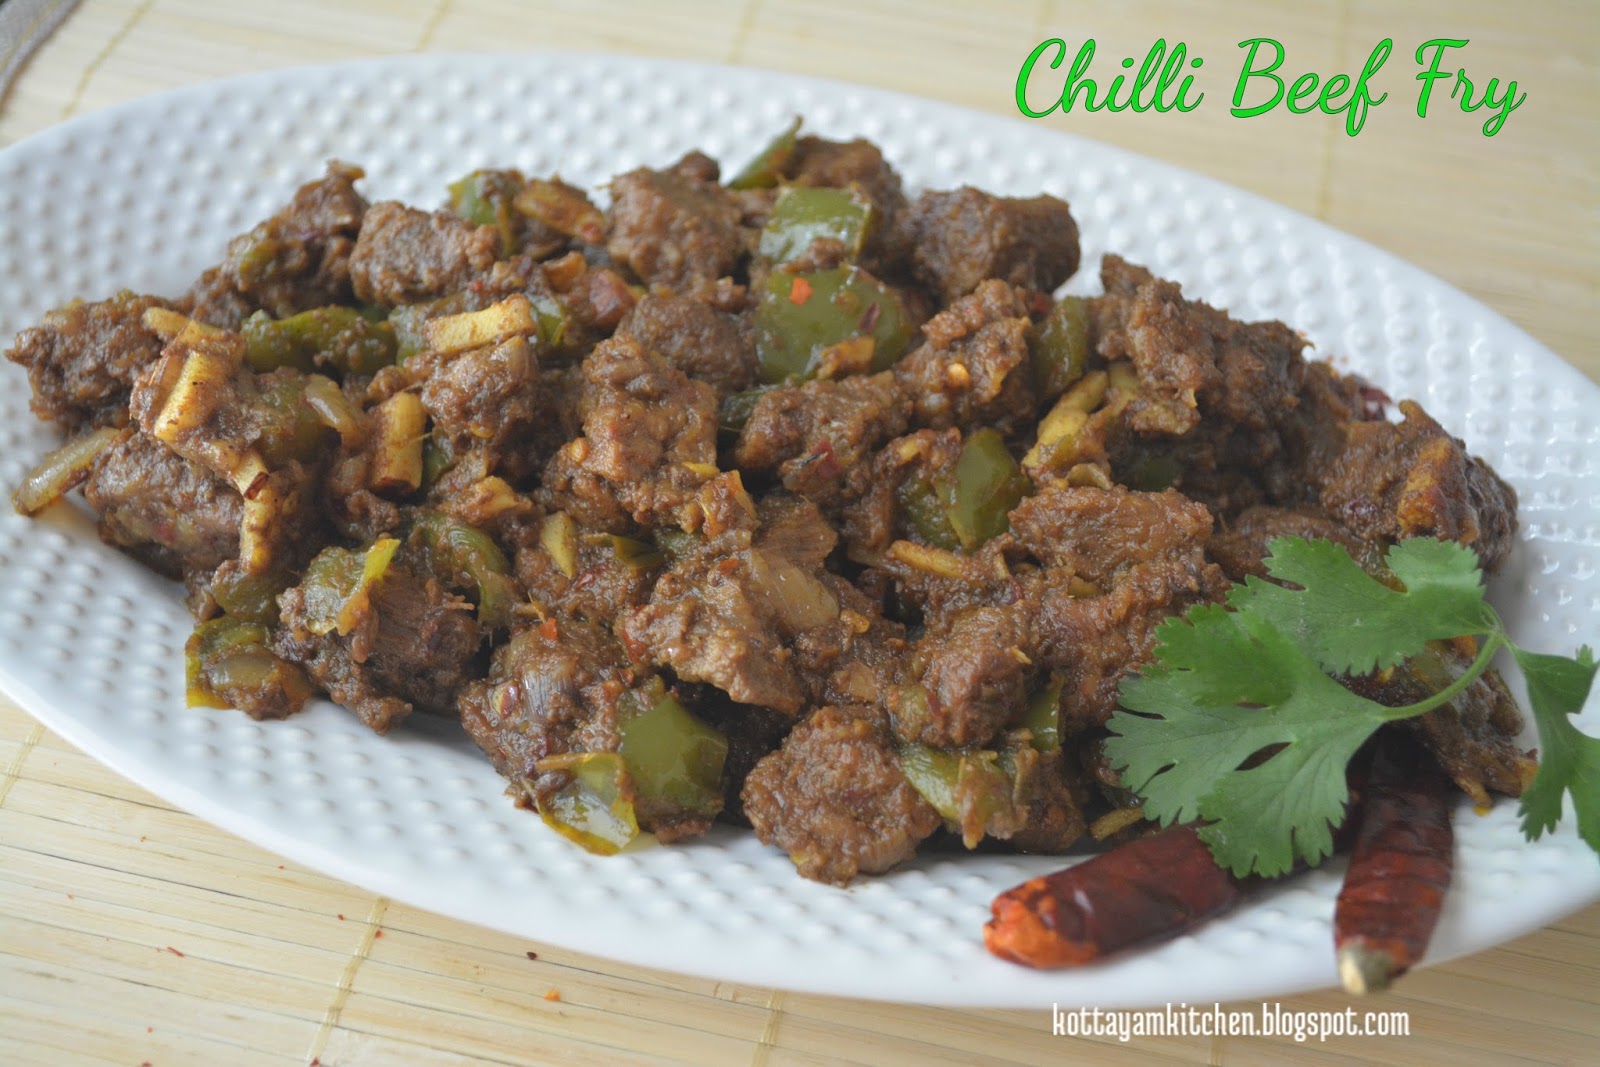 Chilli Beef fry recipe - Kottayam Kitchen